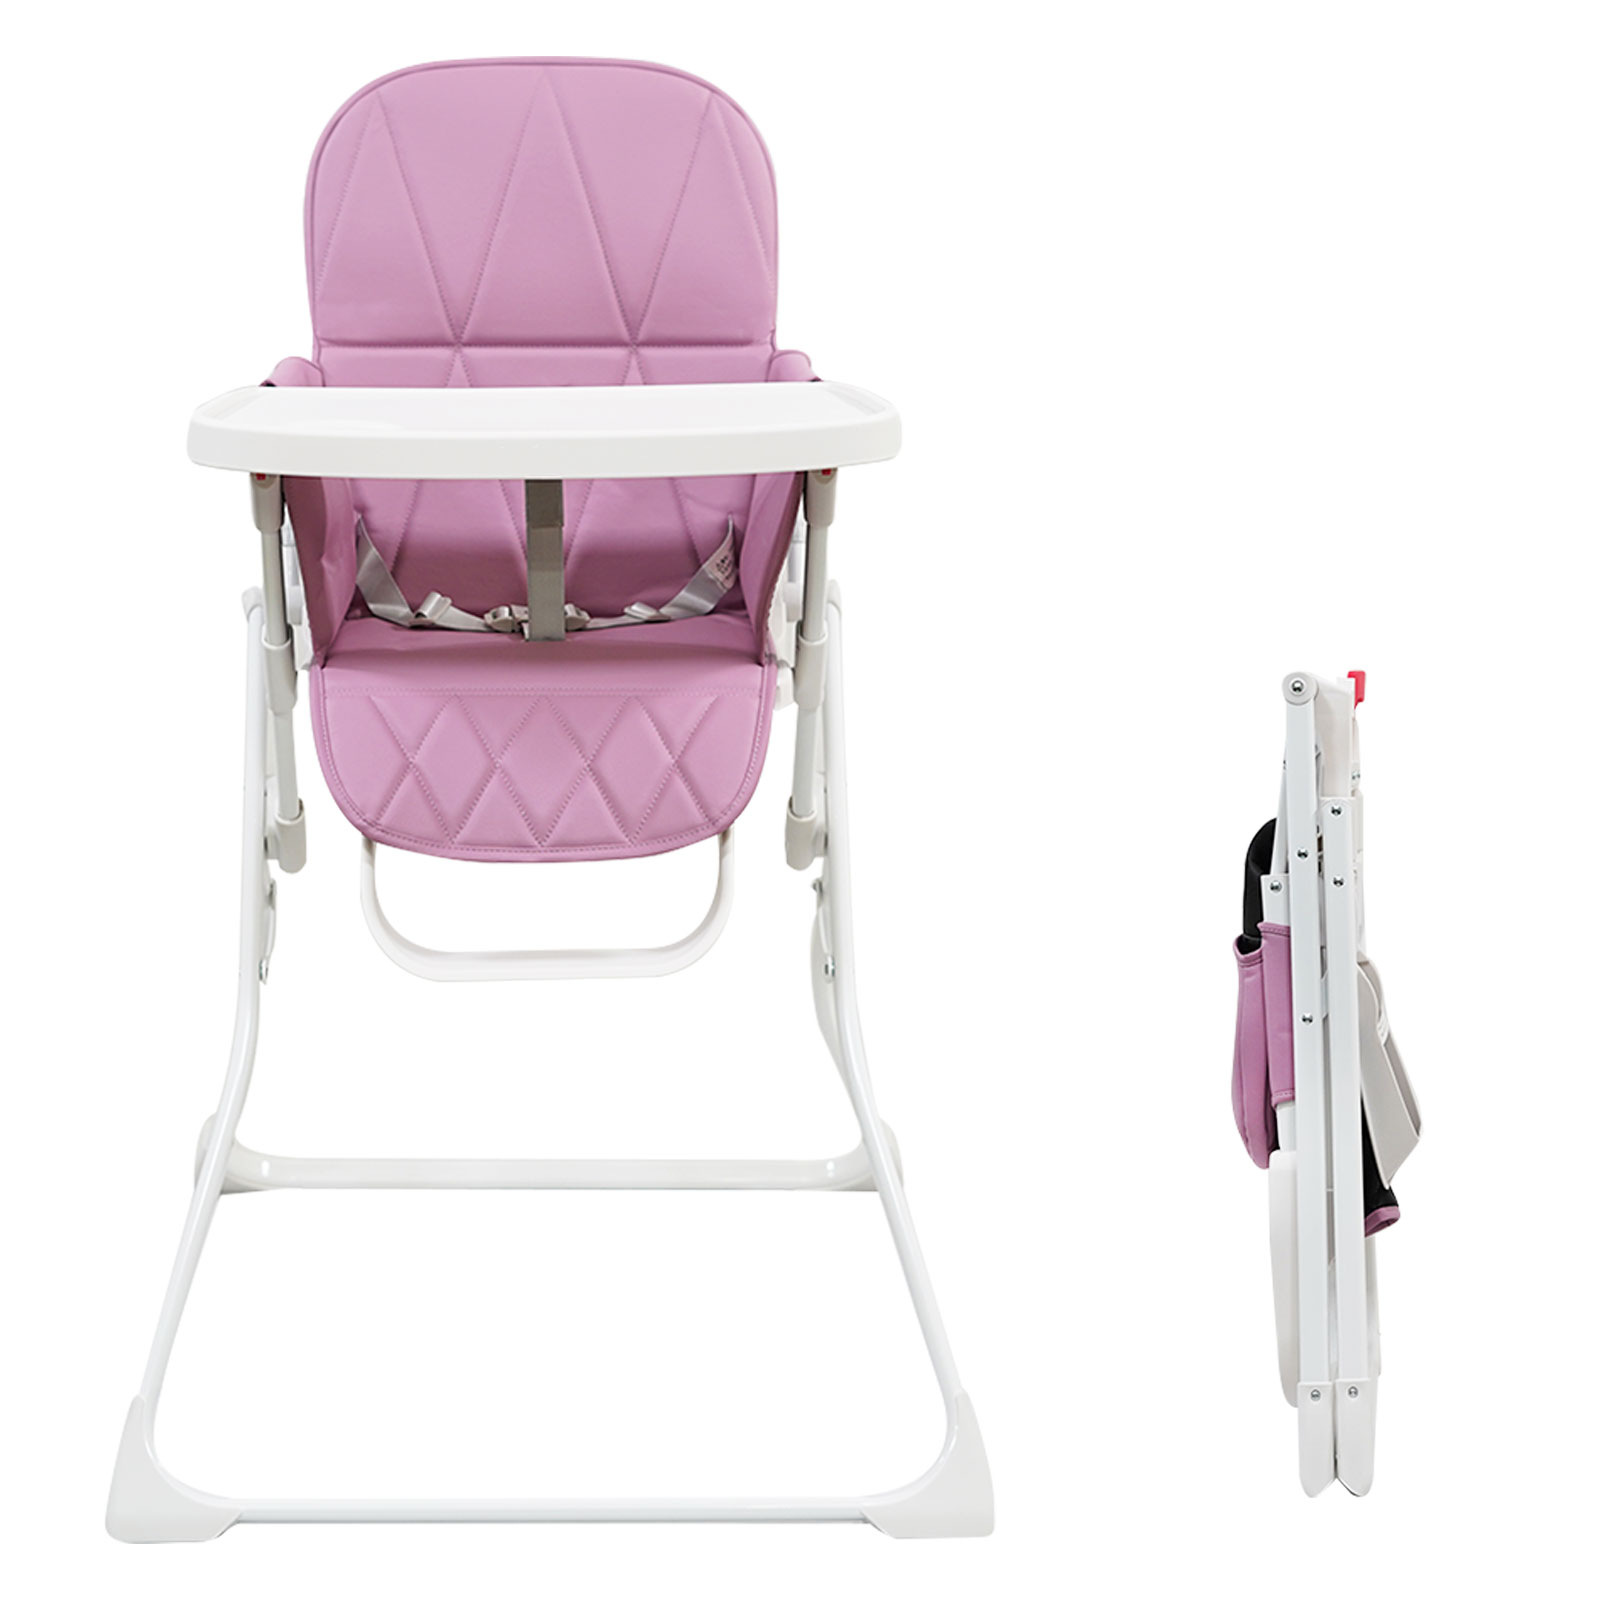 ベビーチェア ハイチェア コンパクト 軽量 折りたたみ 子供 食事 椅子 6ヶ月から36ヶ月まで 赤ちゃん 離乳食 いす 安全ベルト付き  15kgまで対応。